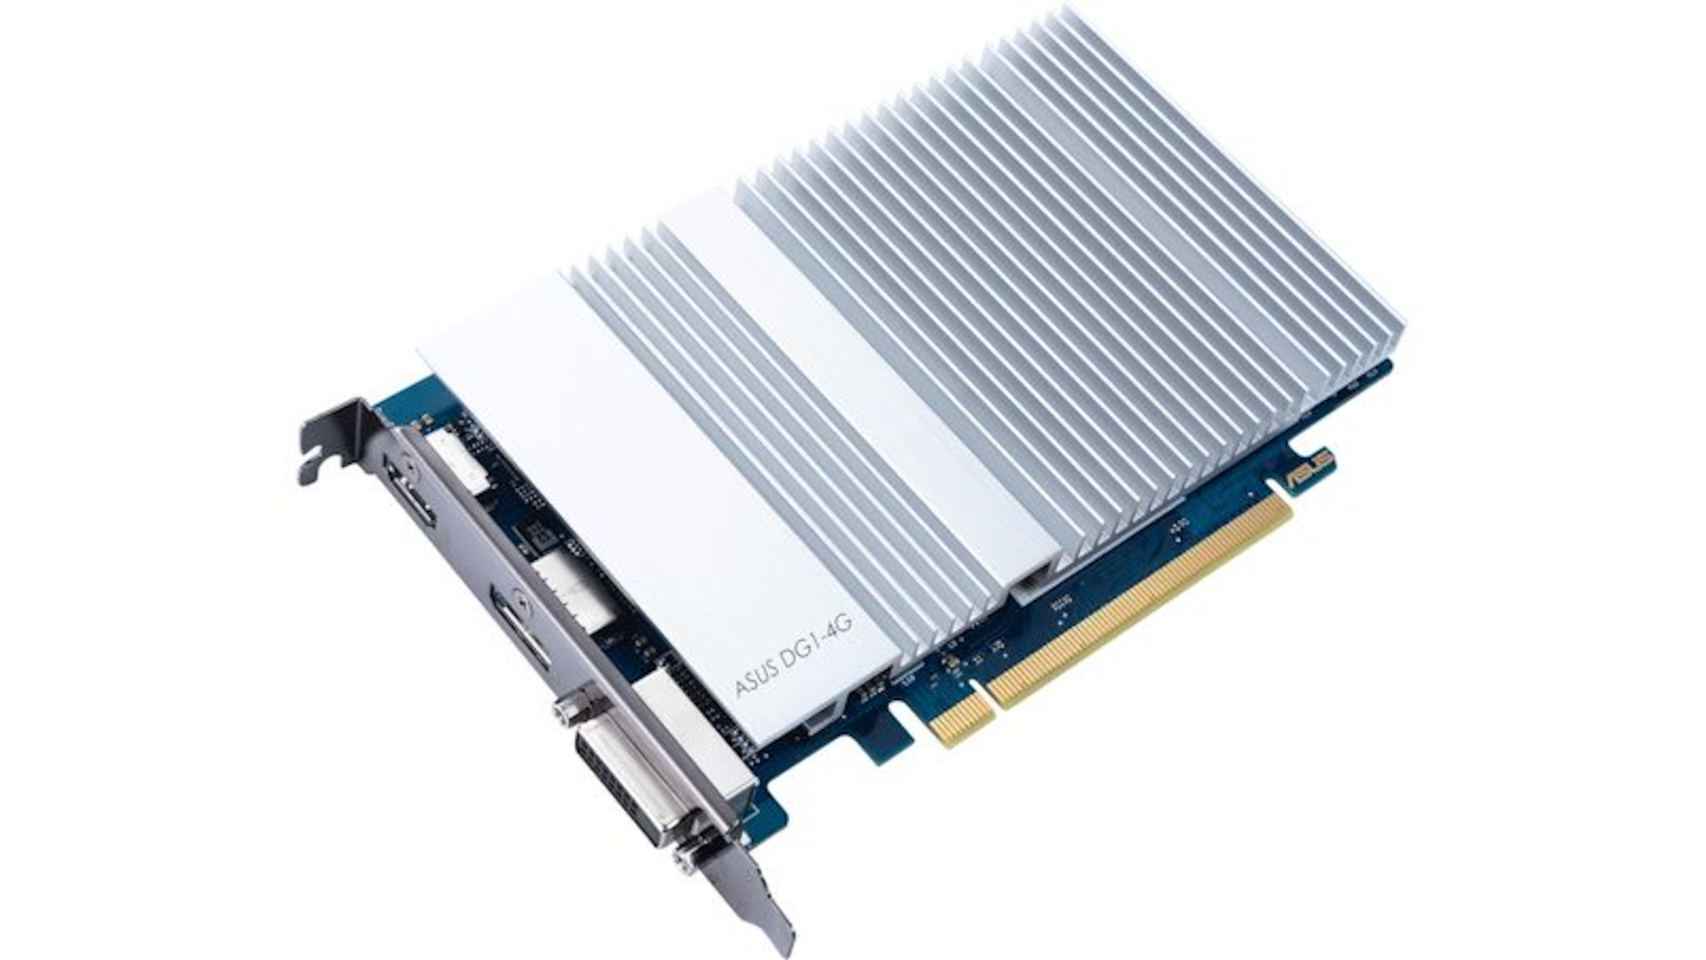 La tarjeta gráfica de Asus basada en el chip de Intel